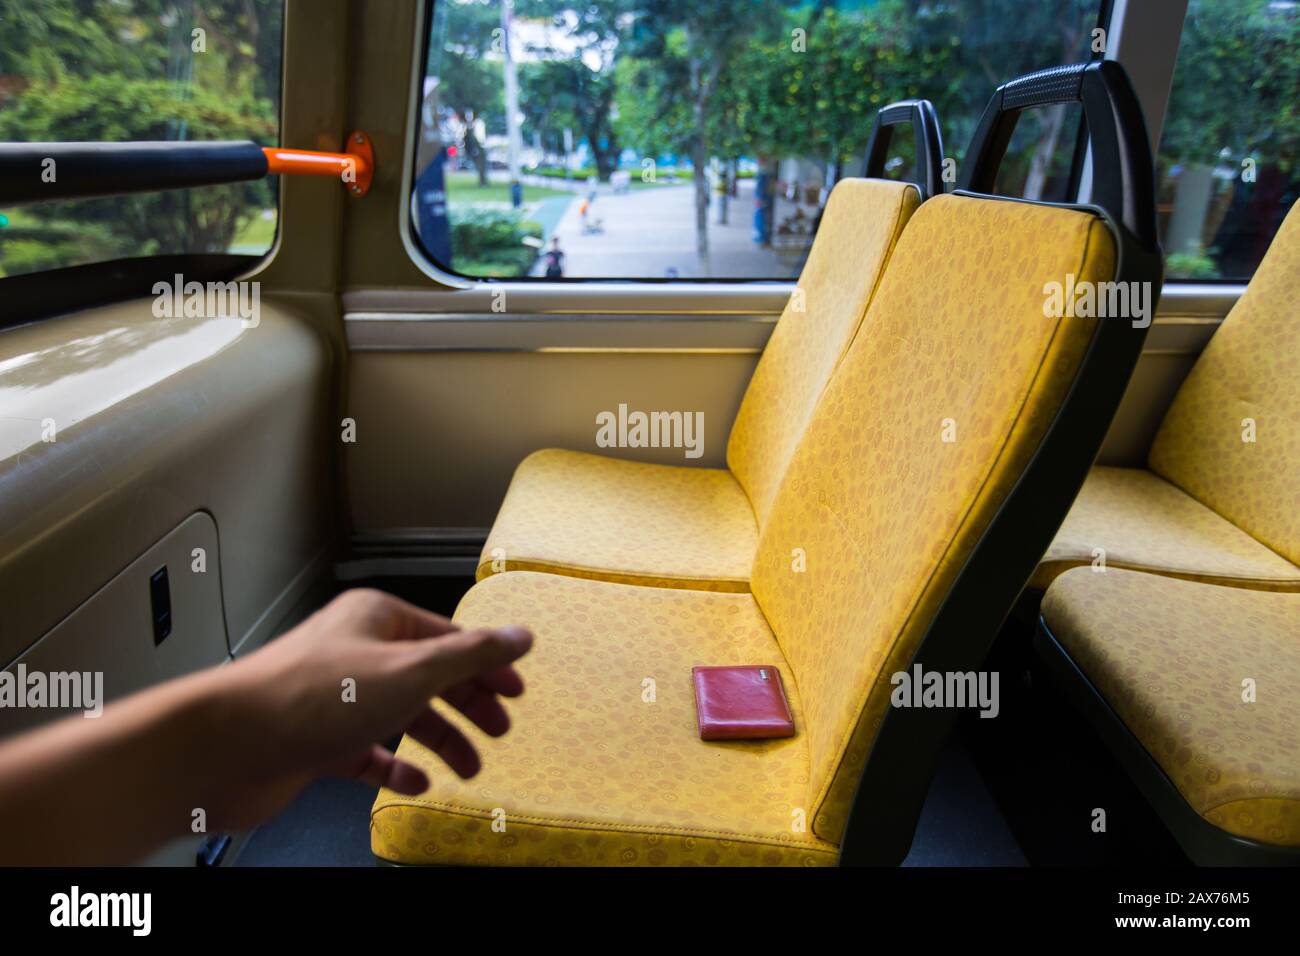 Eine linke Hand streckt sich aus, um eine verlorene Geldbörse auf dem Sitz eines öffentlichen Busses zu holen. Stockfoto